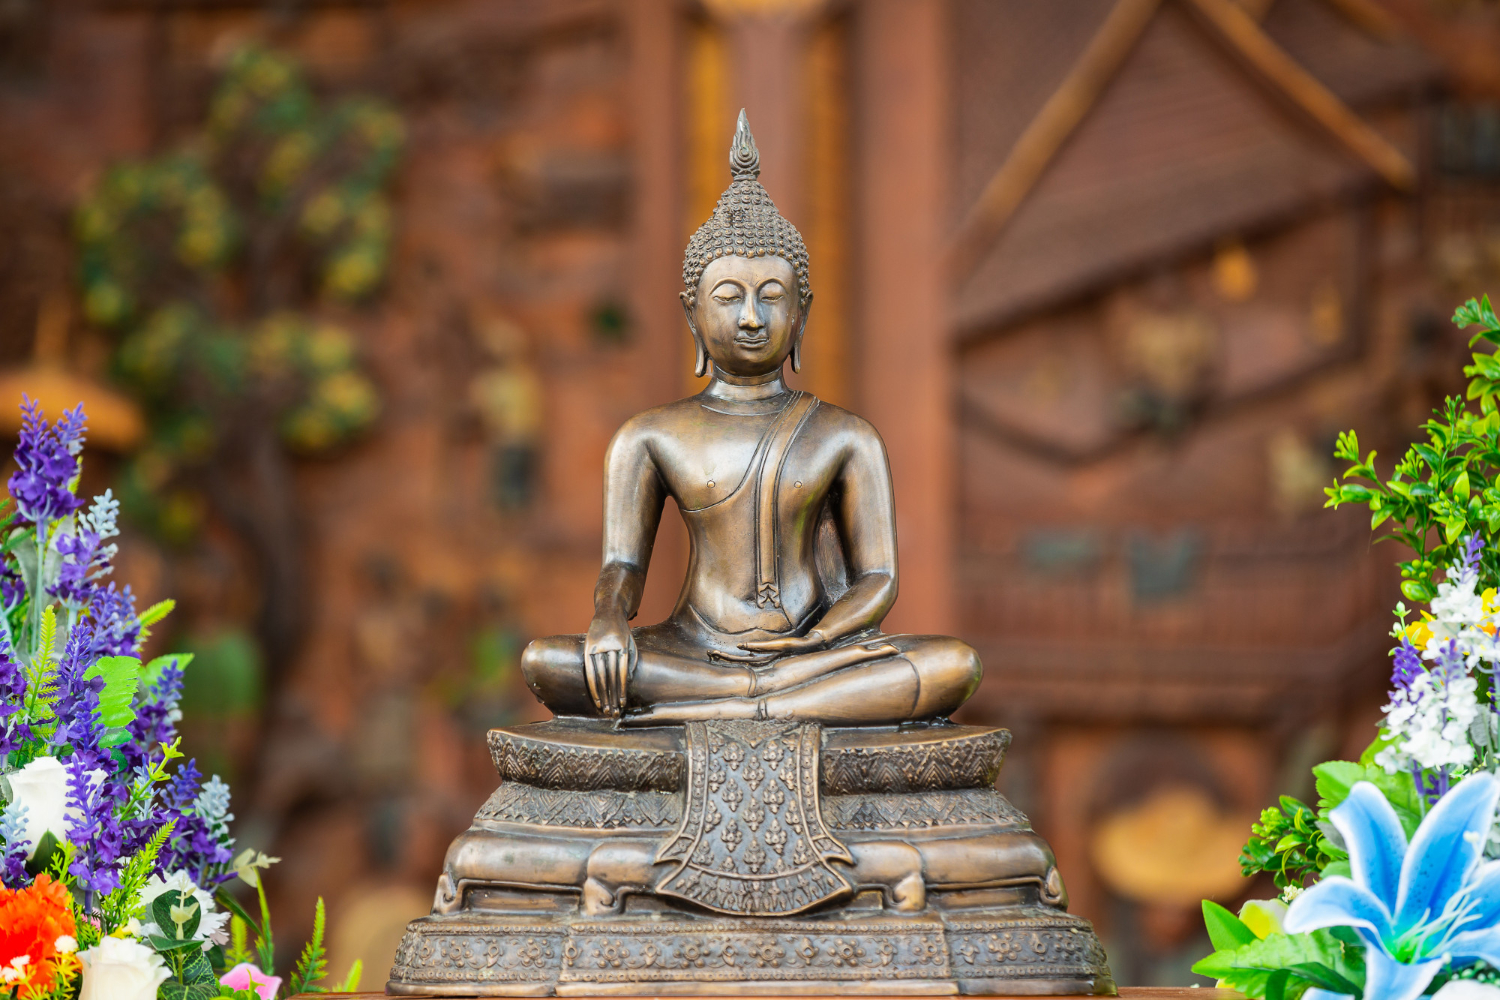 Mente Sã Esoterismo explica como usar a imagem de Buda